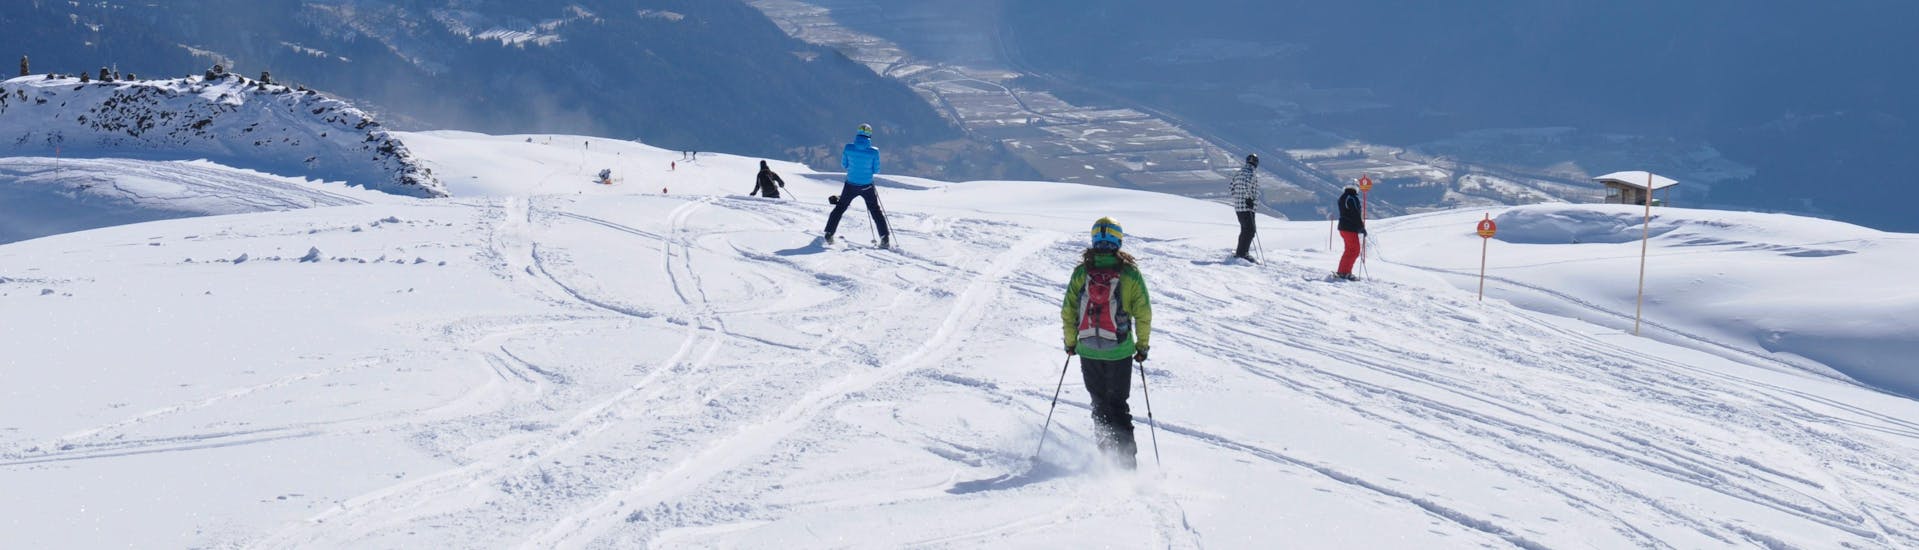 Ausblick auf die sonnige Berglandschaft beim Skifahren lernen mit den Skischulen in Lienz.